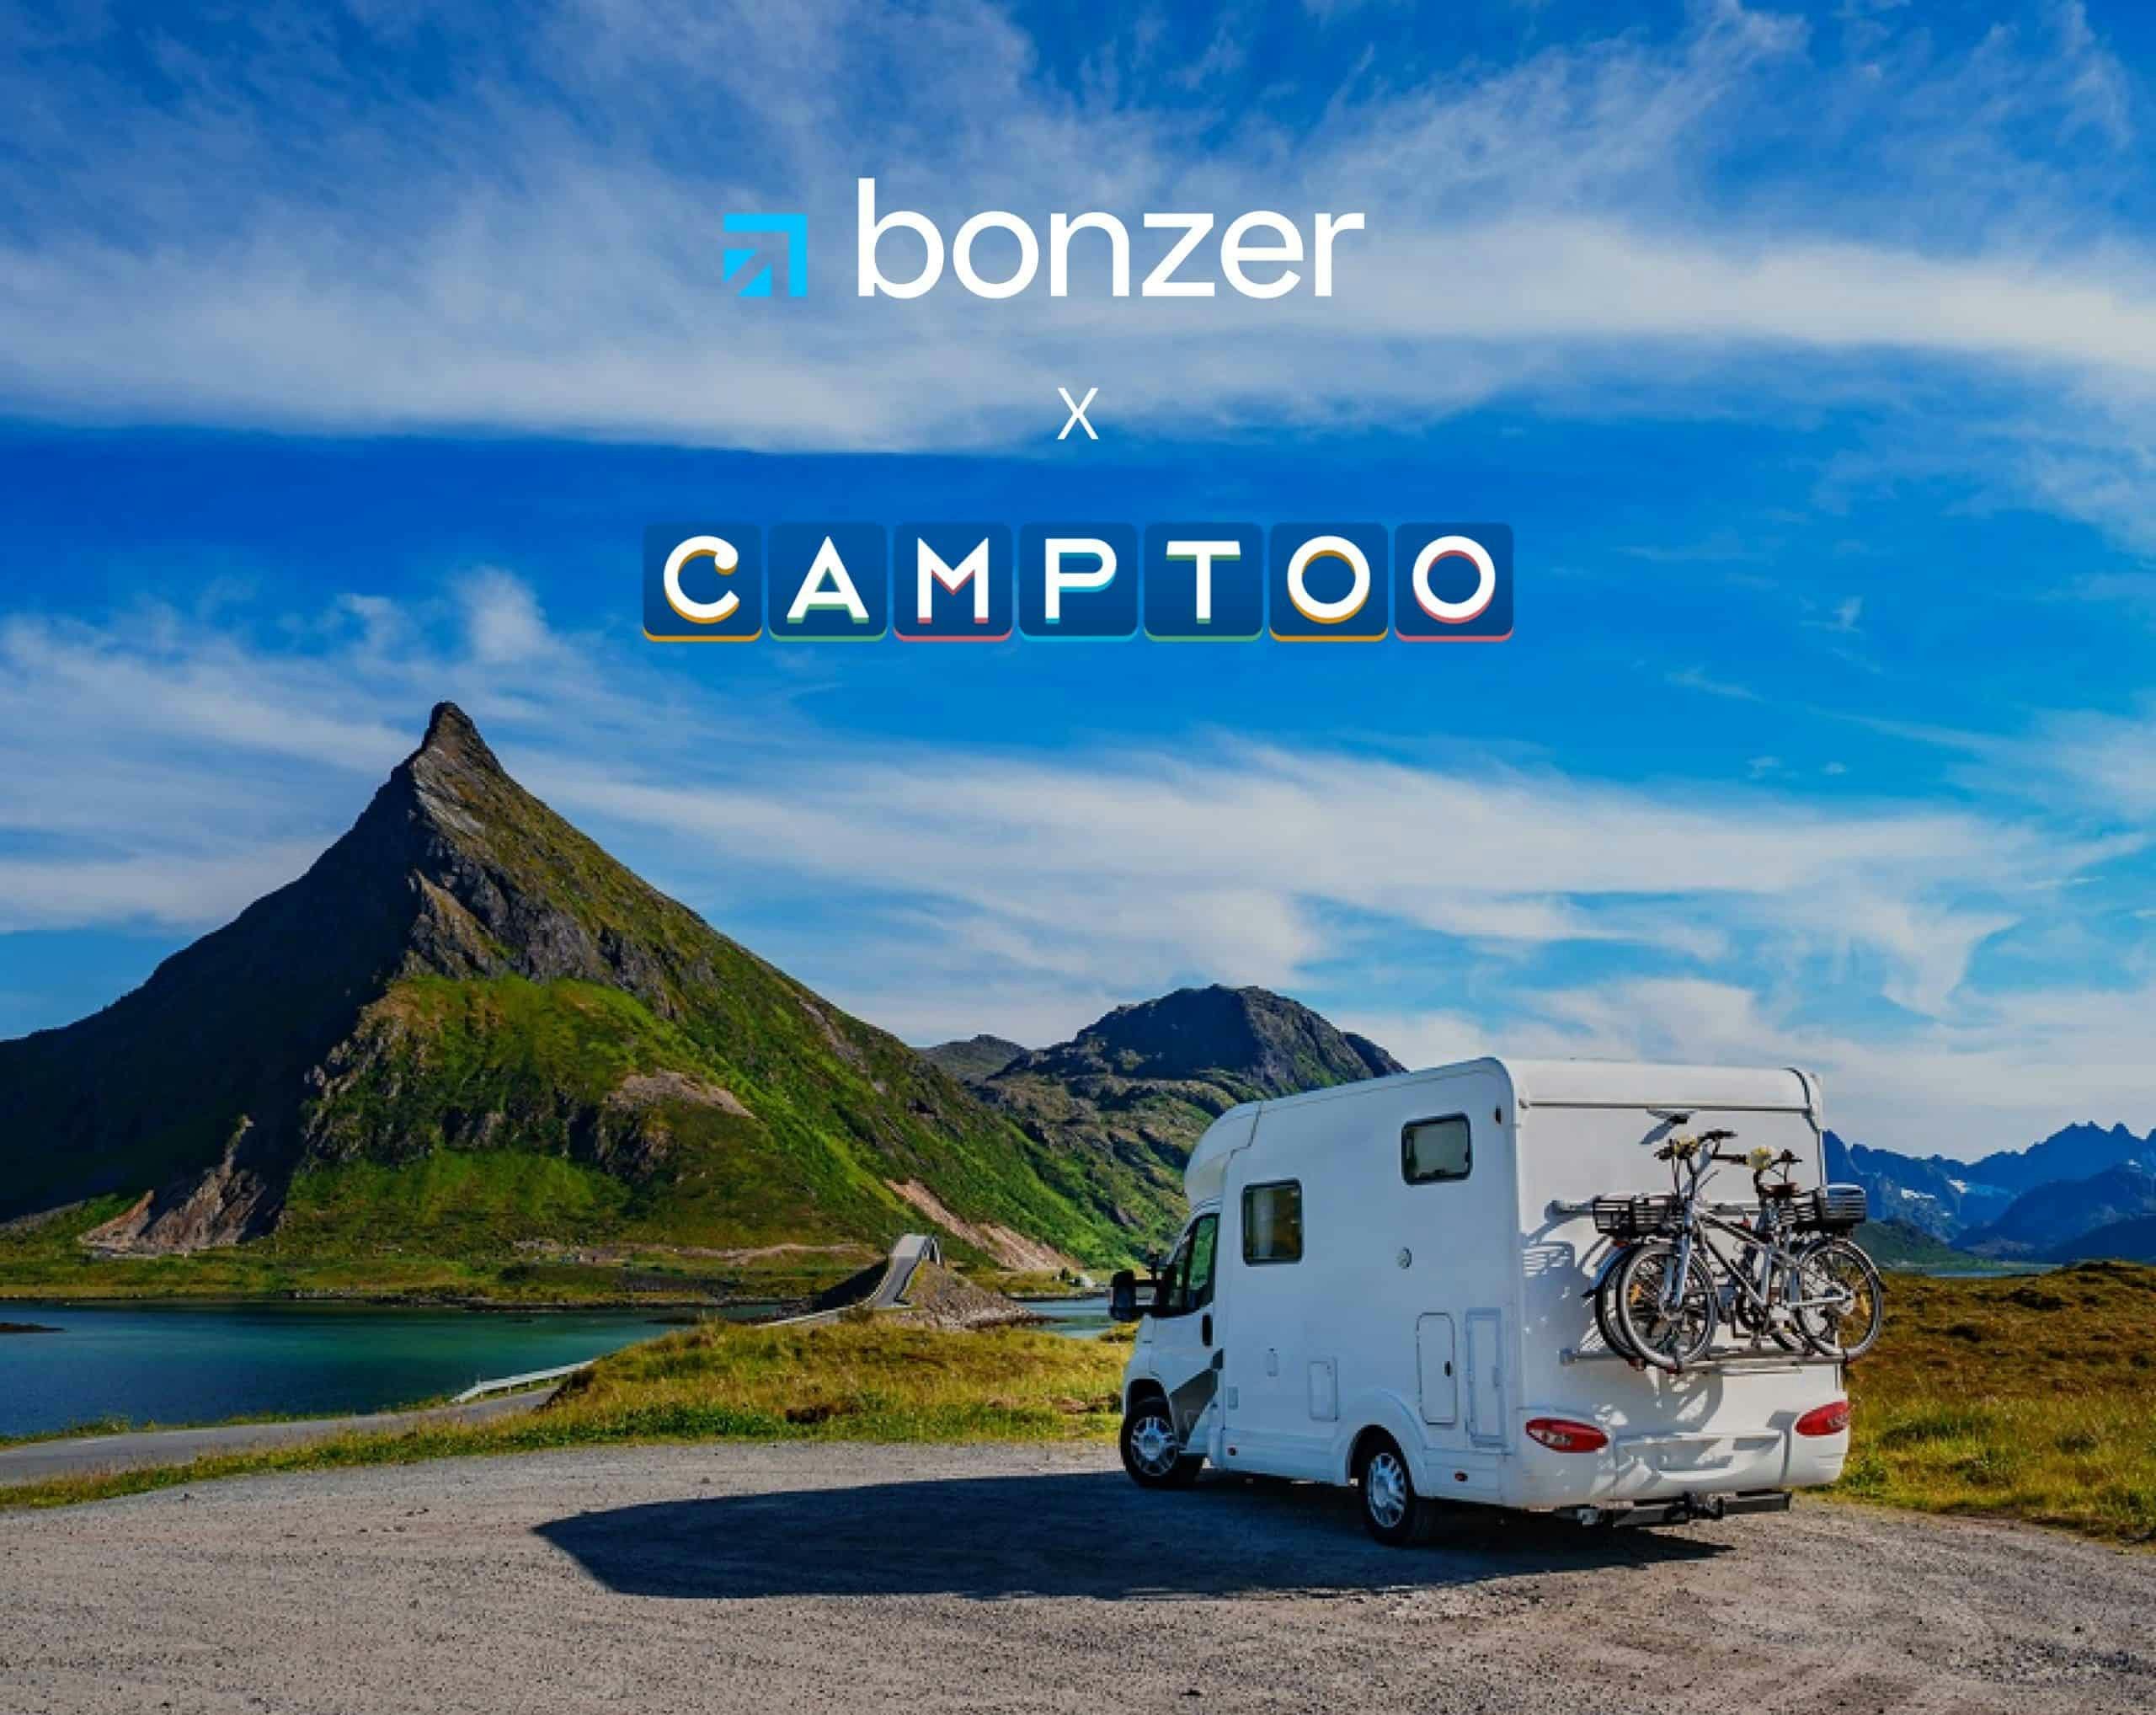 Husbil stående framför bergtopp. Text "Bonzer x Camptoo"